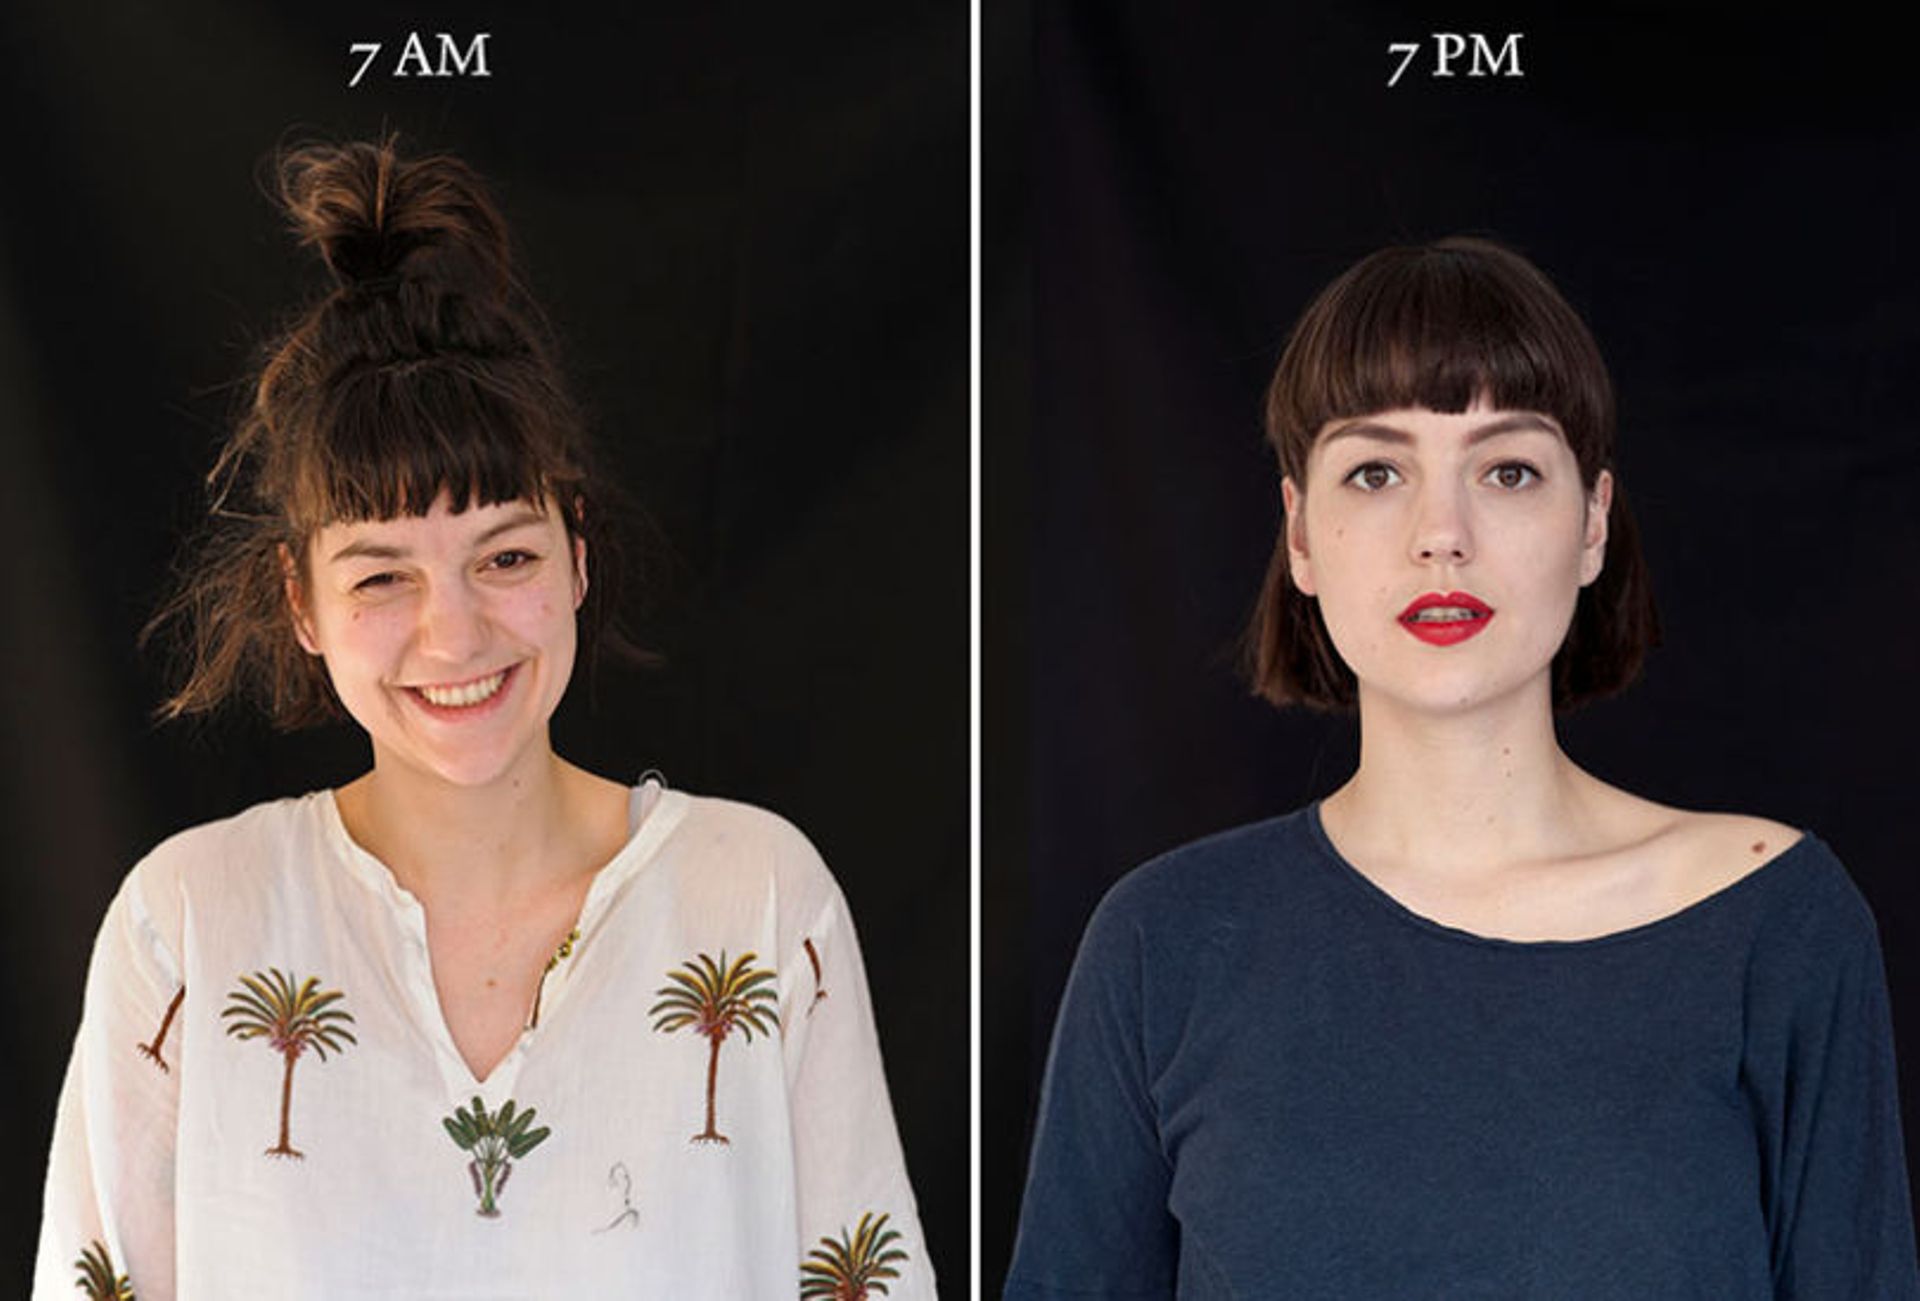 Entre 7h du matin et 19h, voici comment évolue votre visage et votre image